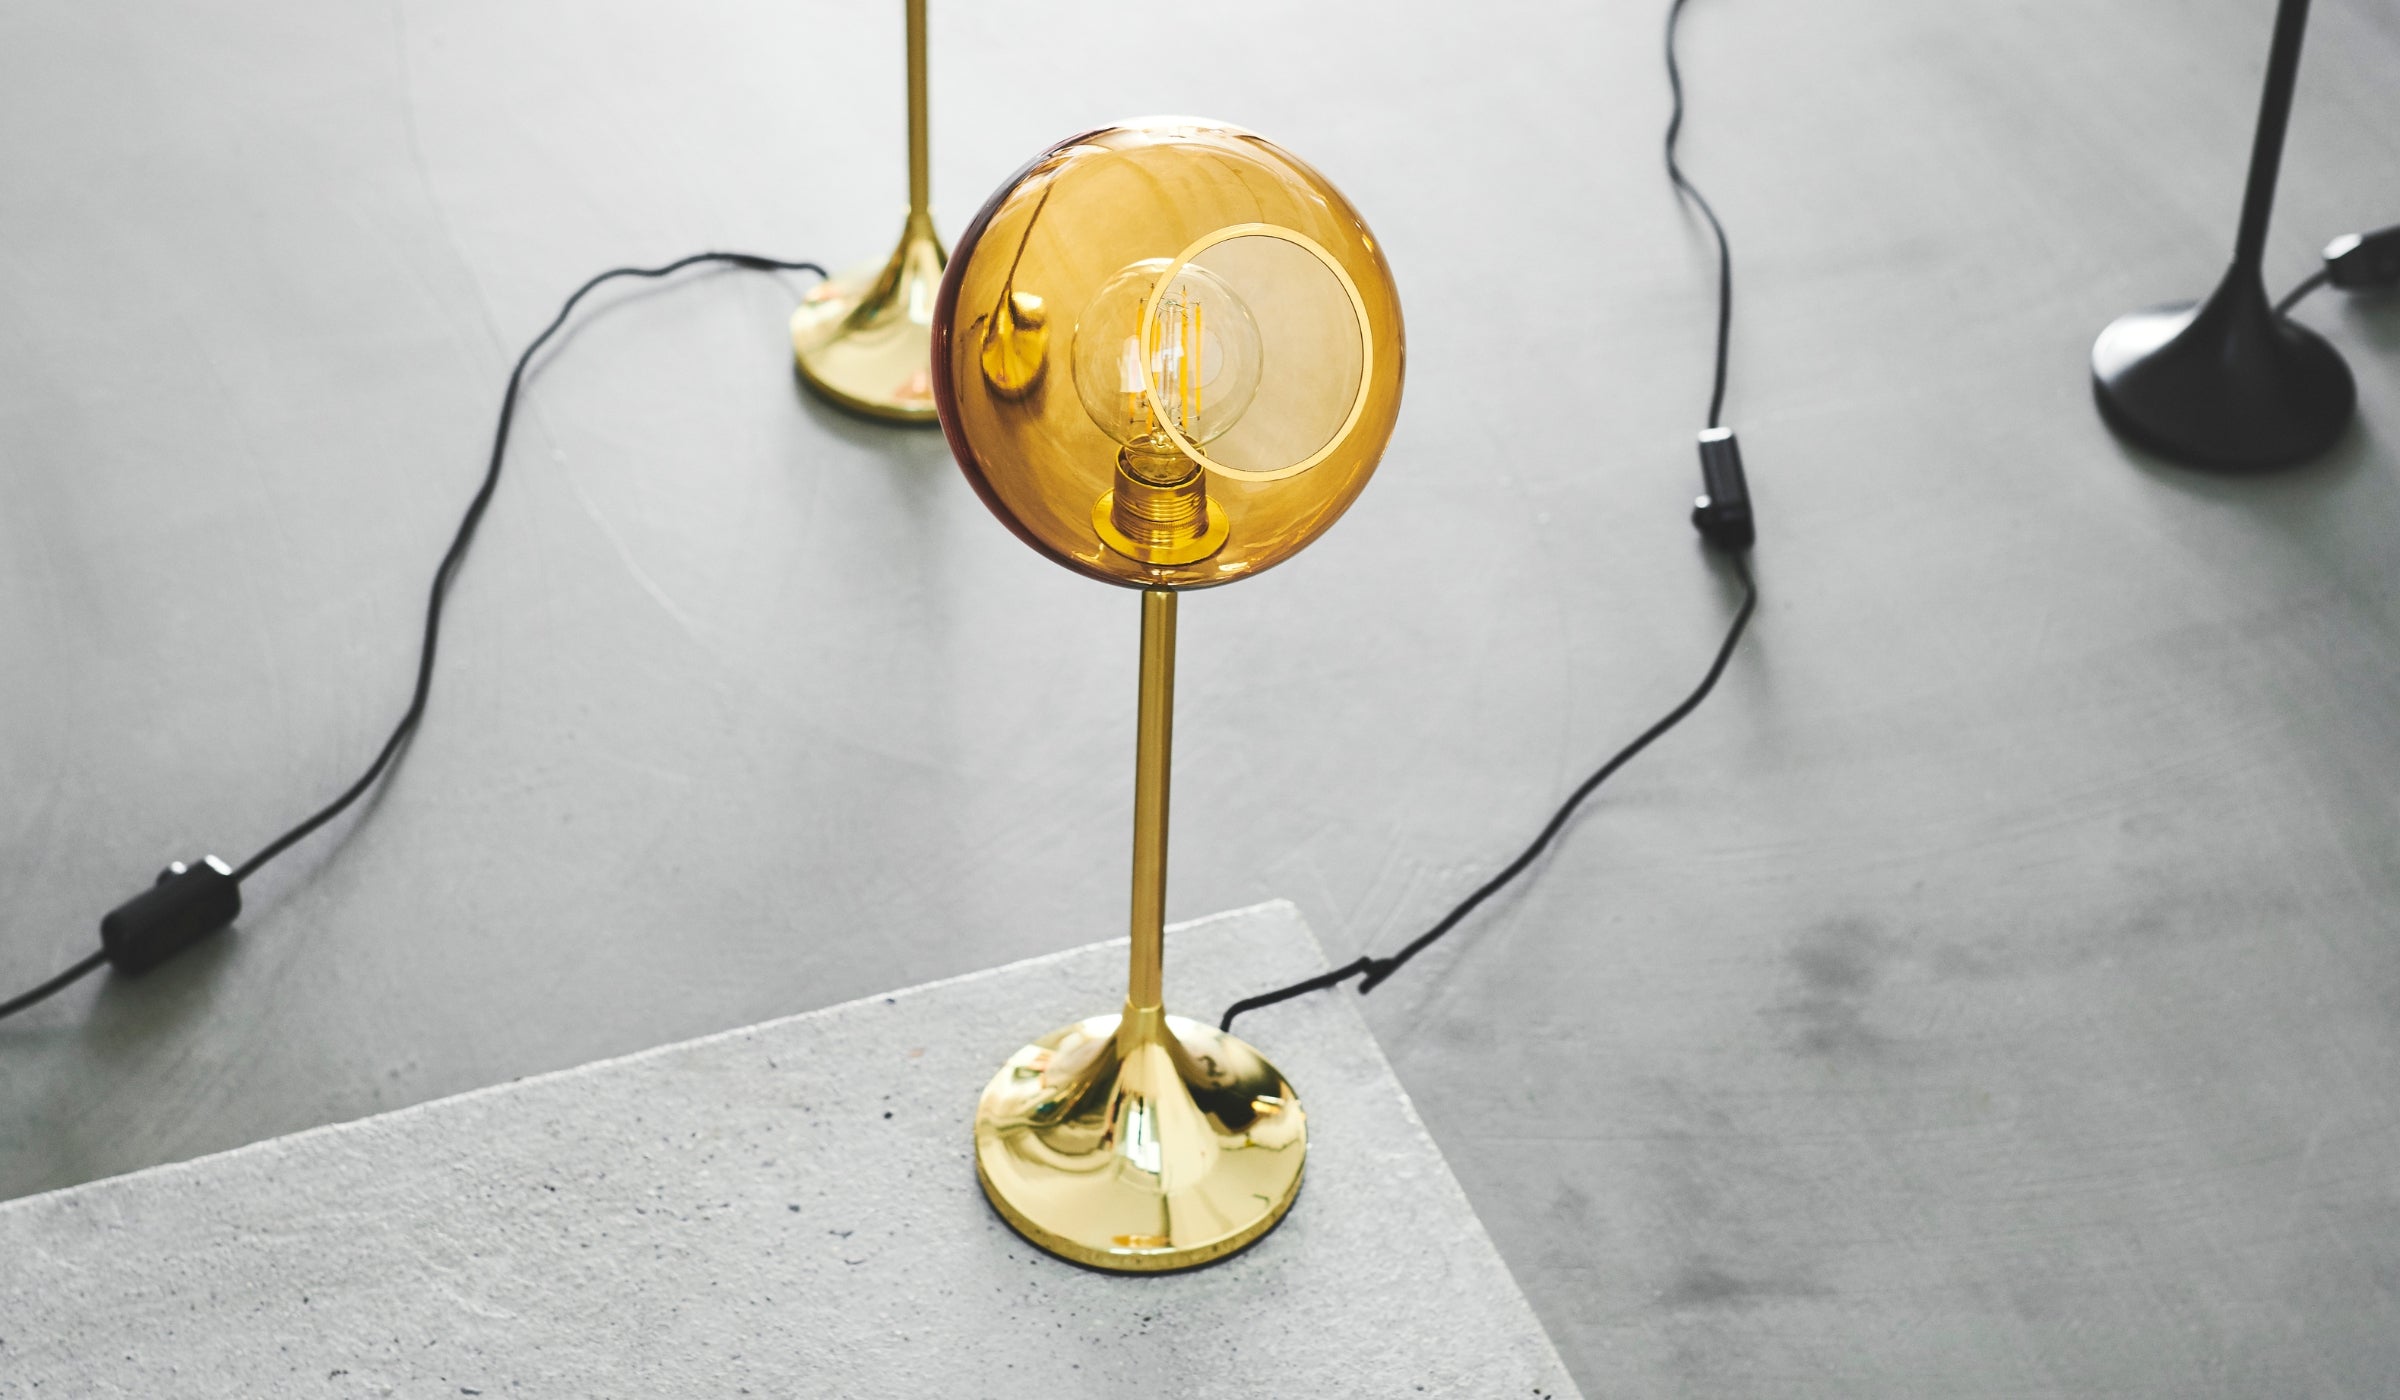 Lampe de table-Ballroom - Lampe de table, verre soufflé à la bouche, Ambre et base dorée--NOVINEA-DESIGN BY US